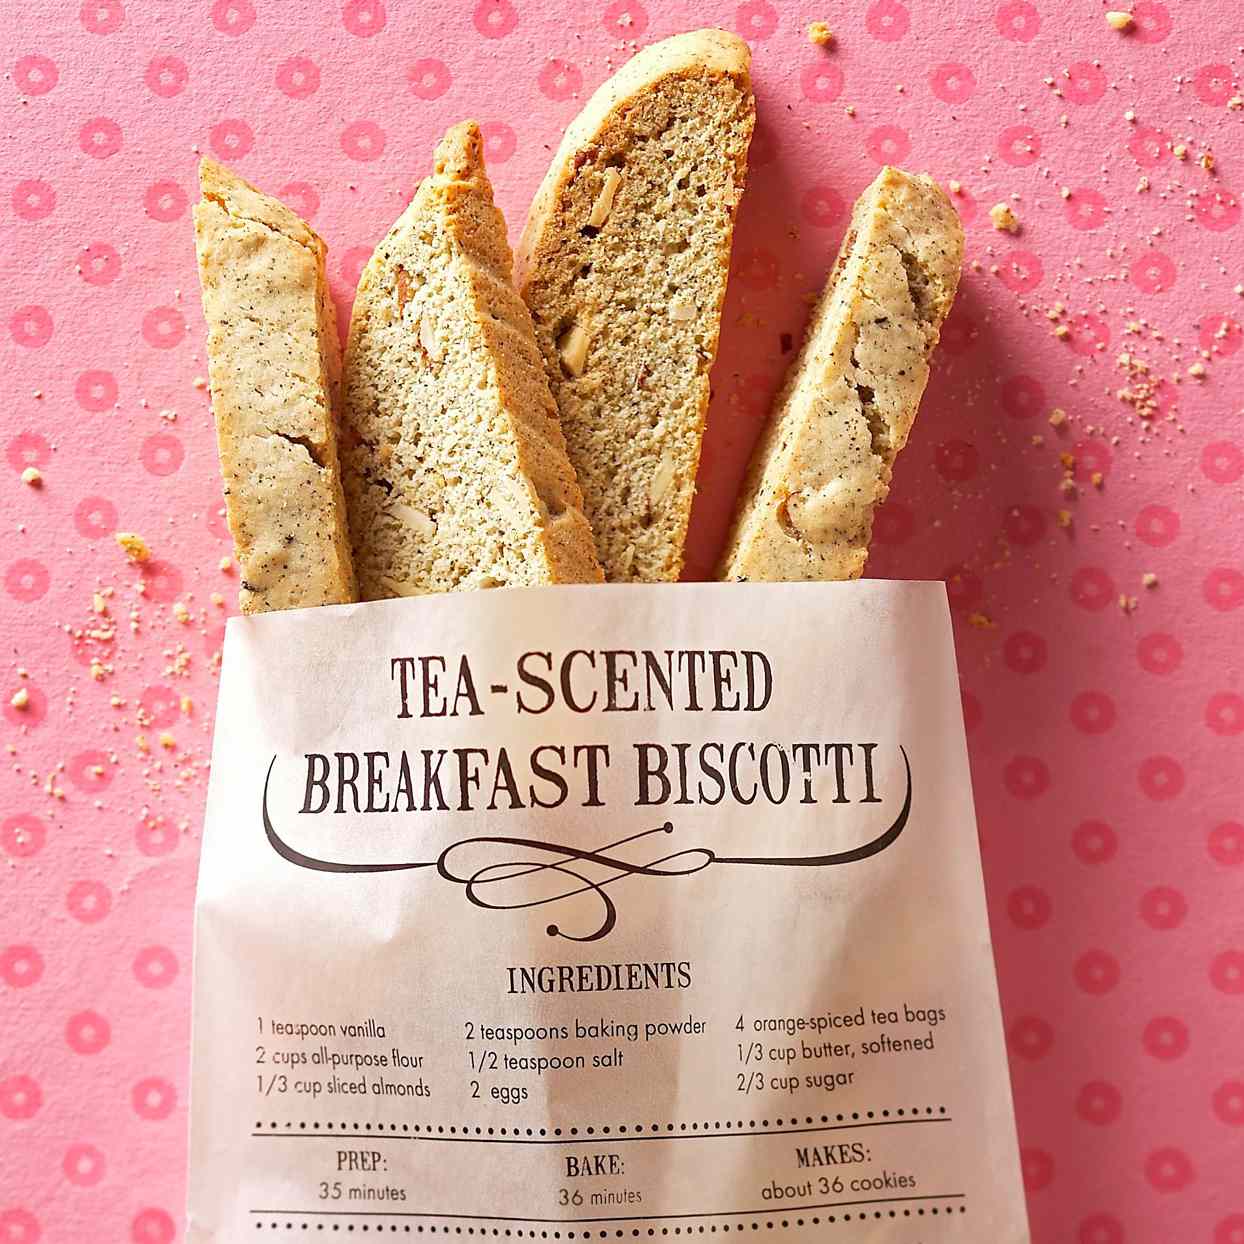 Tea-Scented Breakfast Biscotti